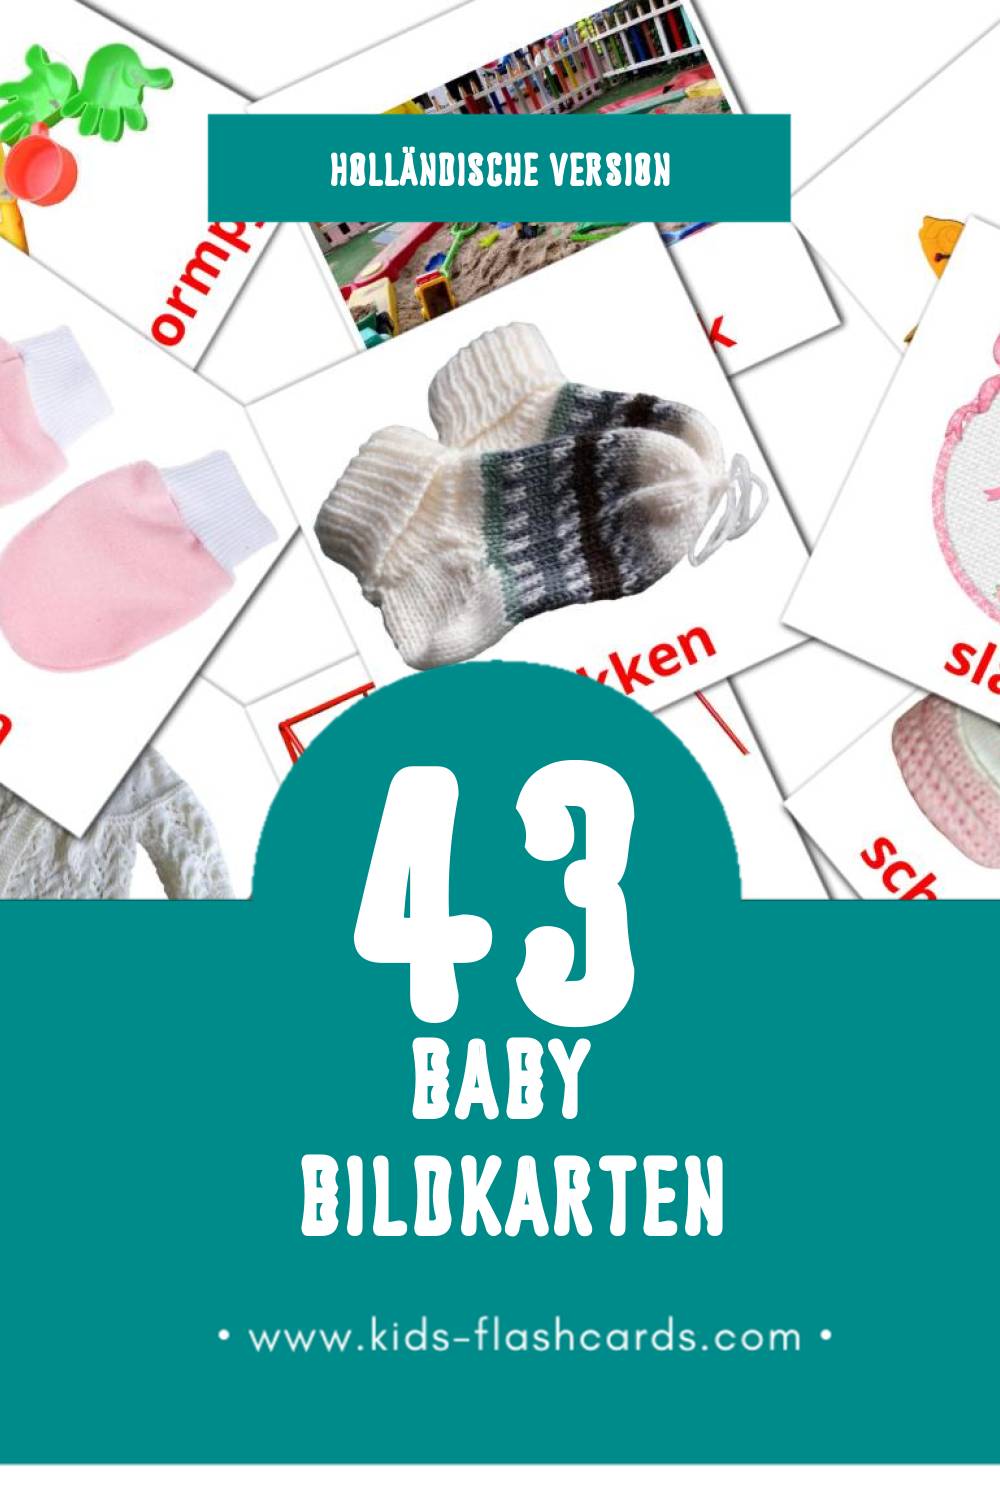 Visual Peuters Flashcards für Kleinkinder (43 Karten in Holländisch)